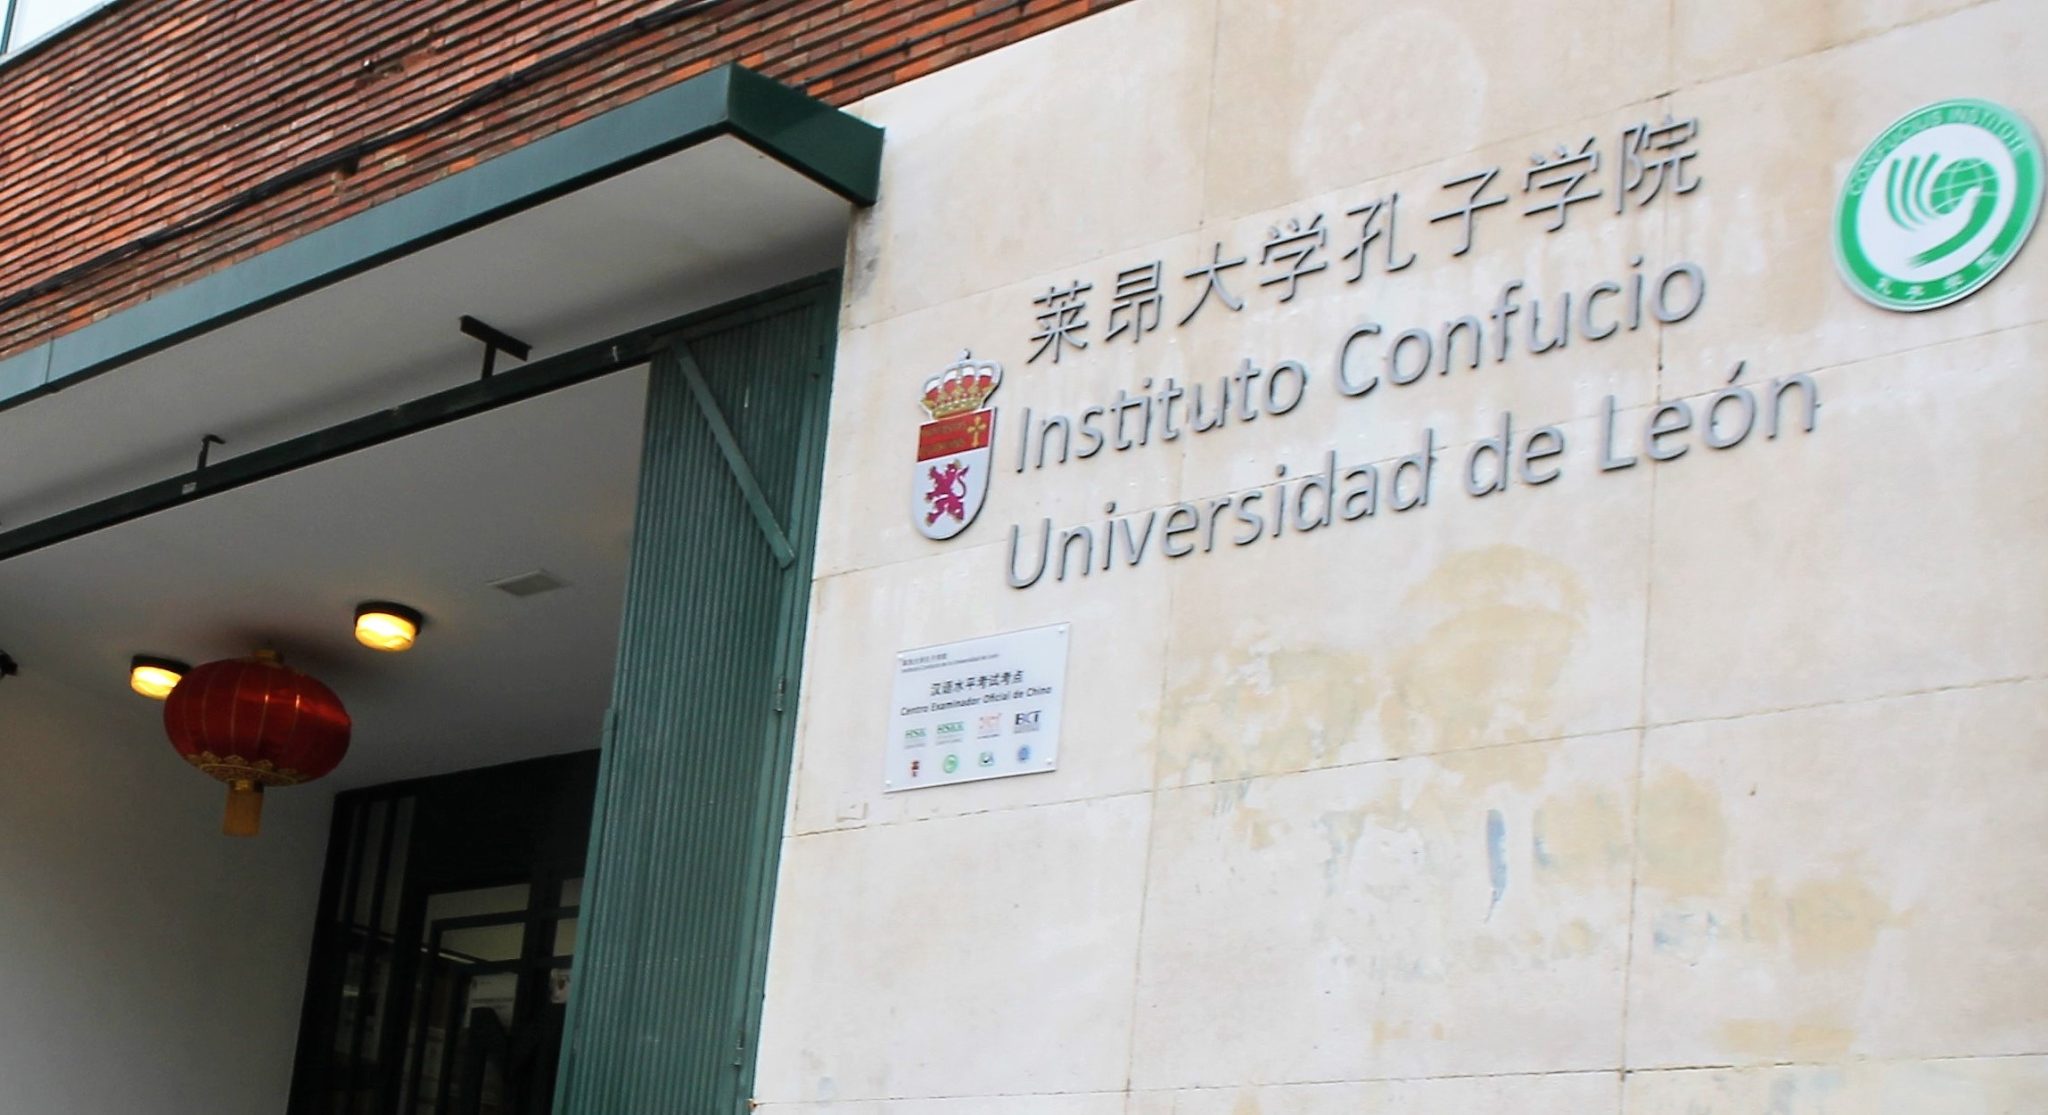 El Instituto Confucio de la ULE programa tres cursos sobre lengua, cultura y sociedad china, uno de ellos en el Campus de Ponferrada 1